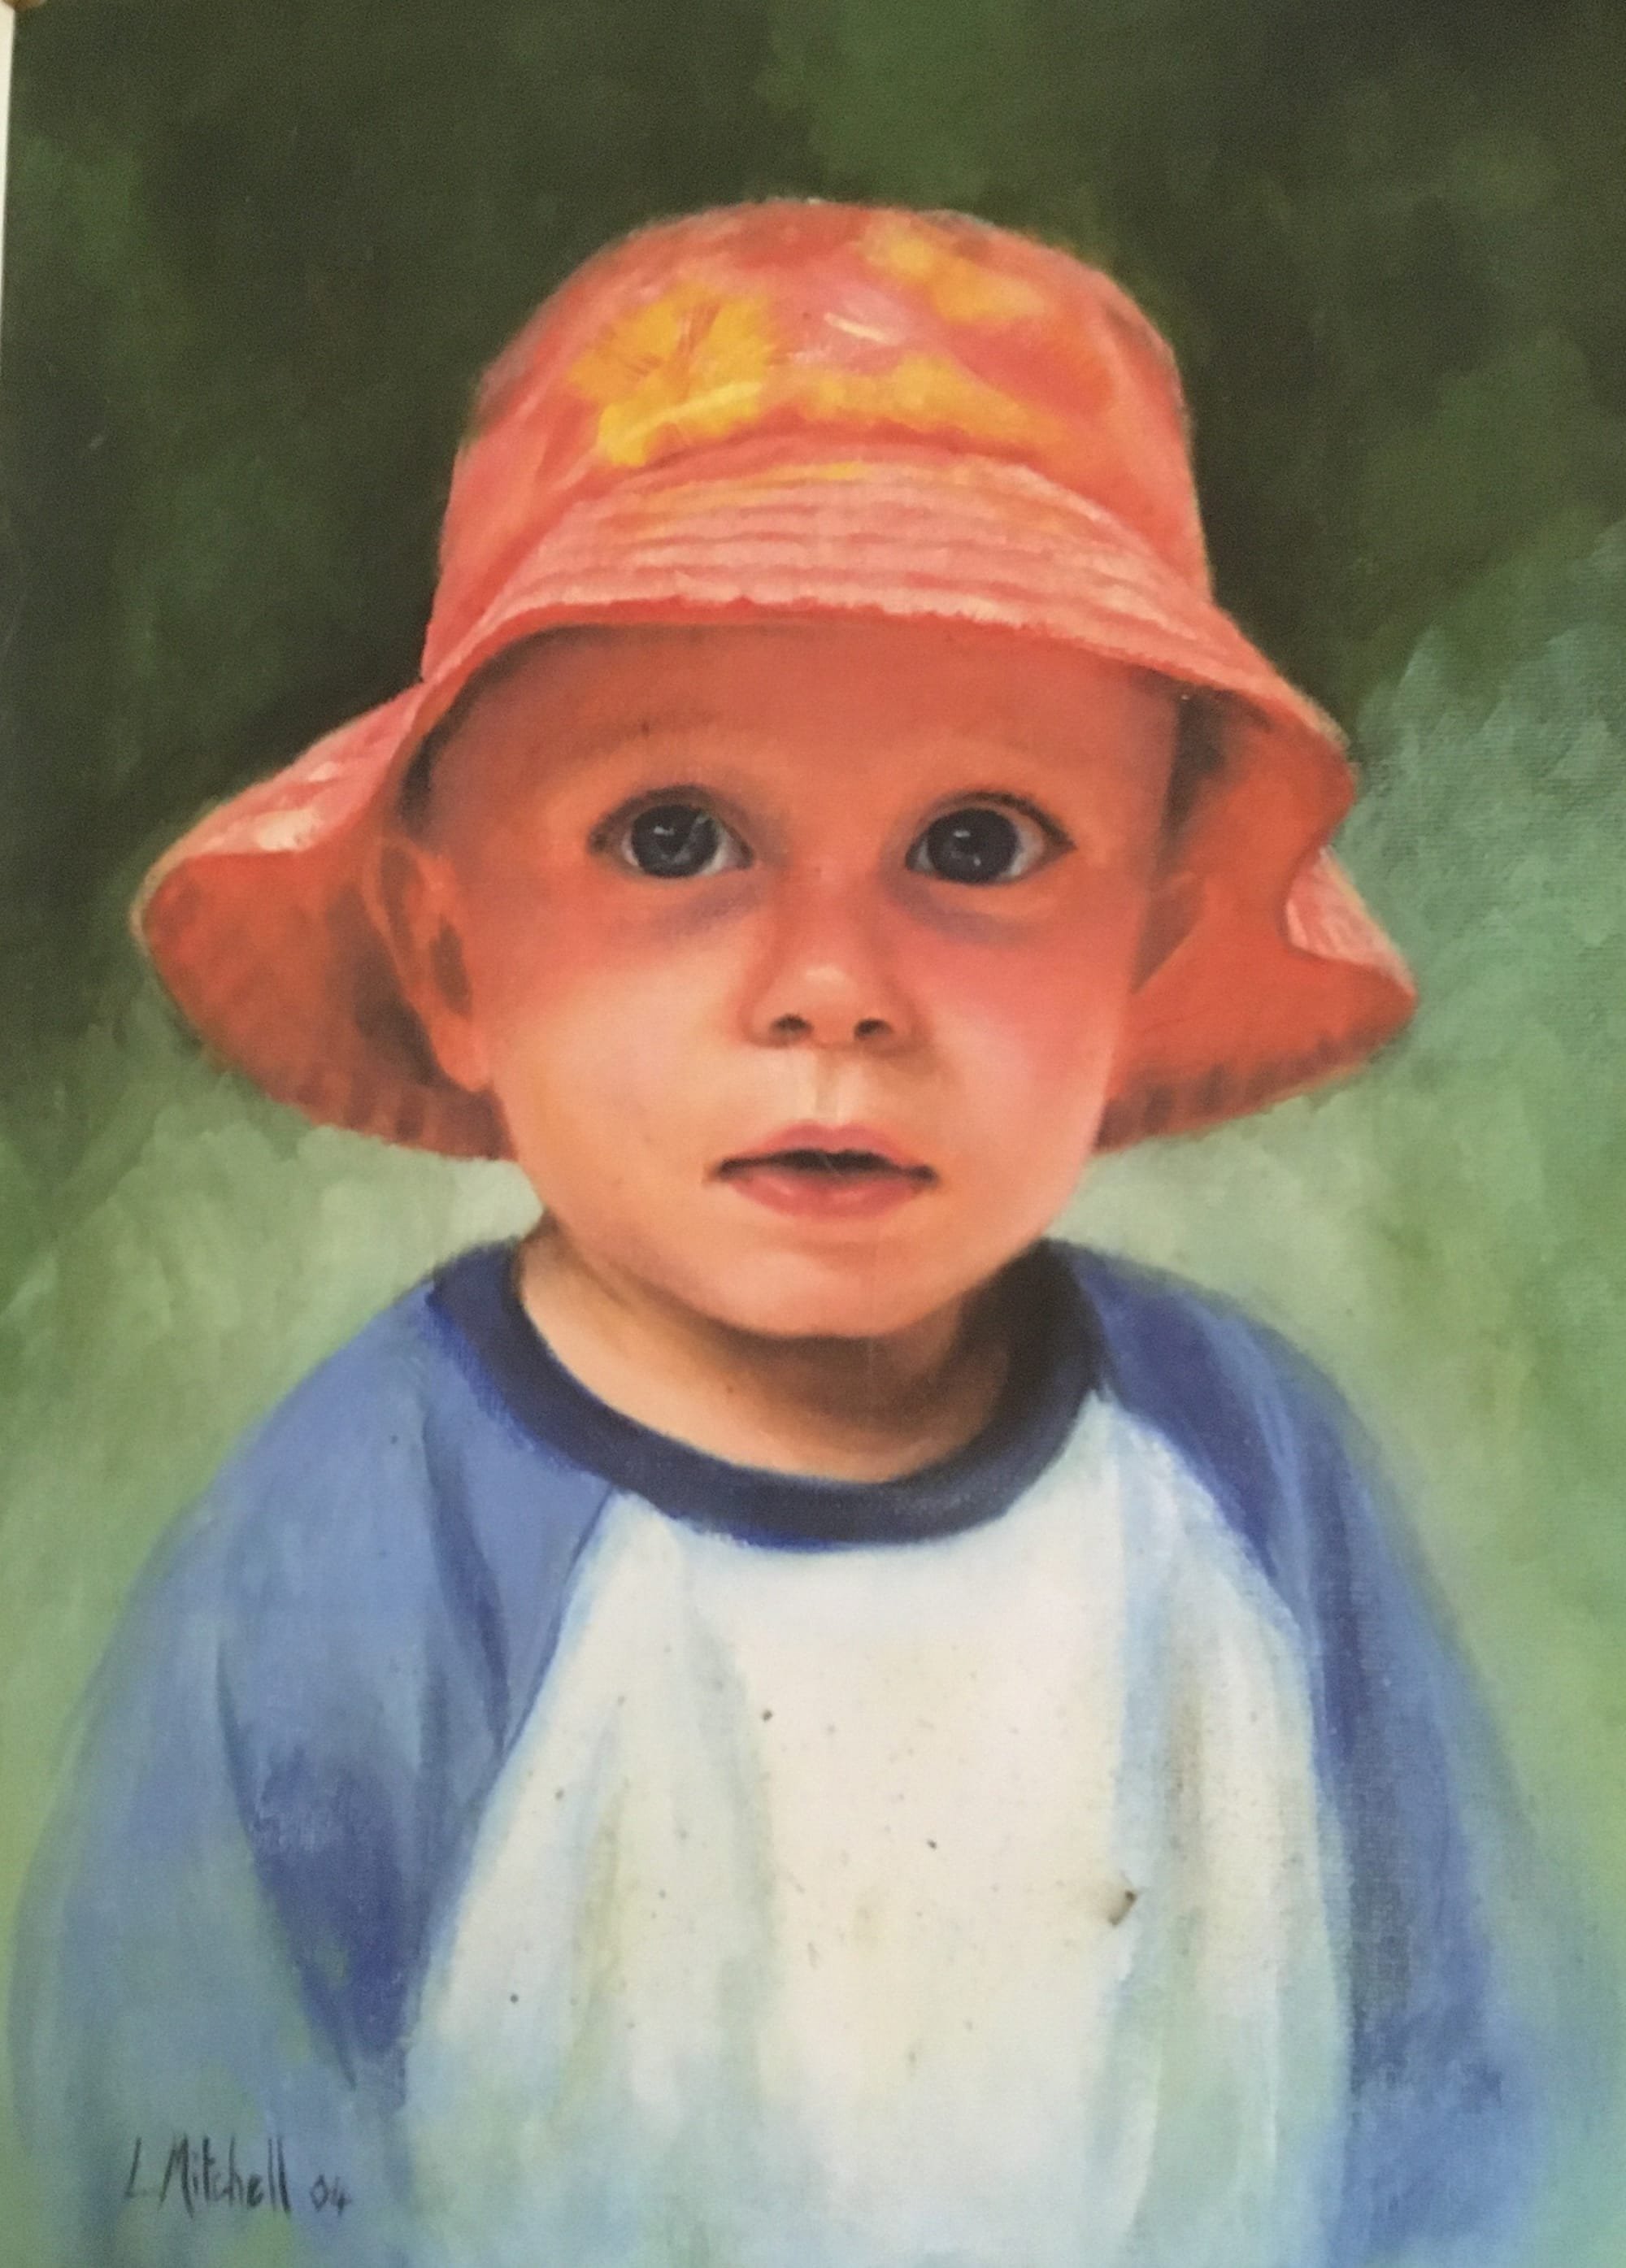 Boy in a red hat